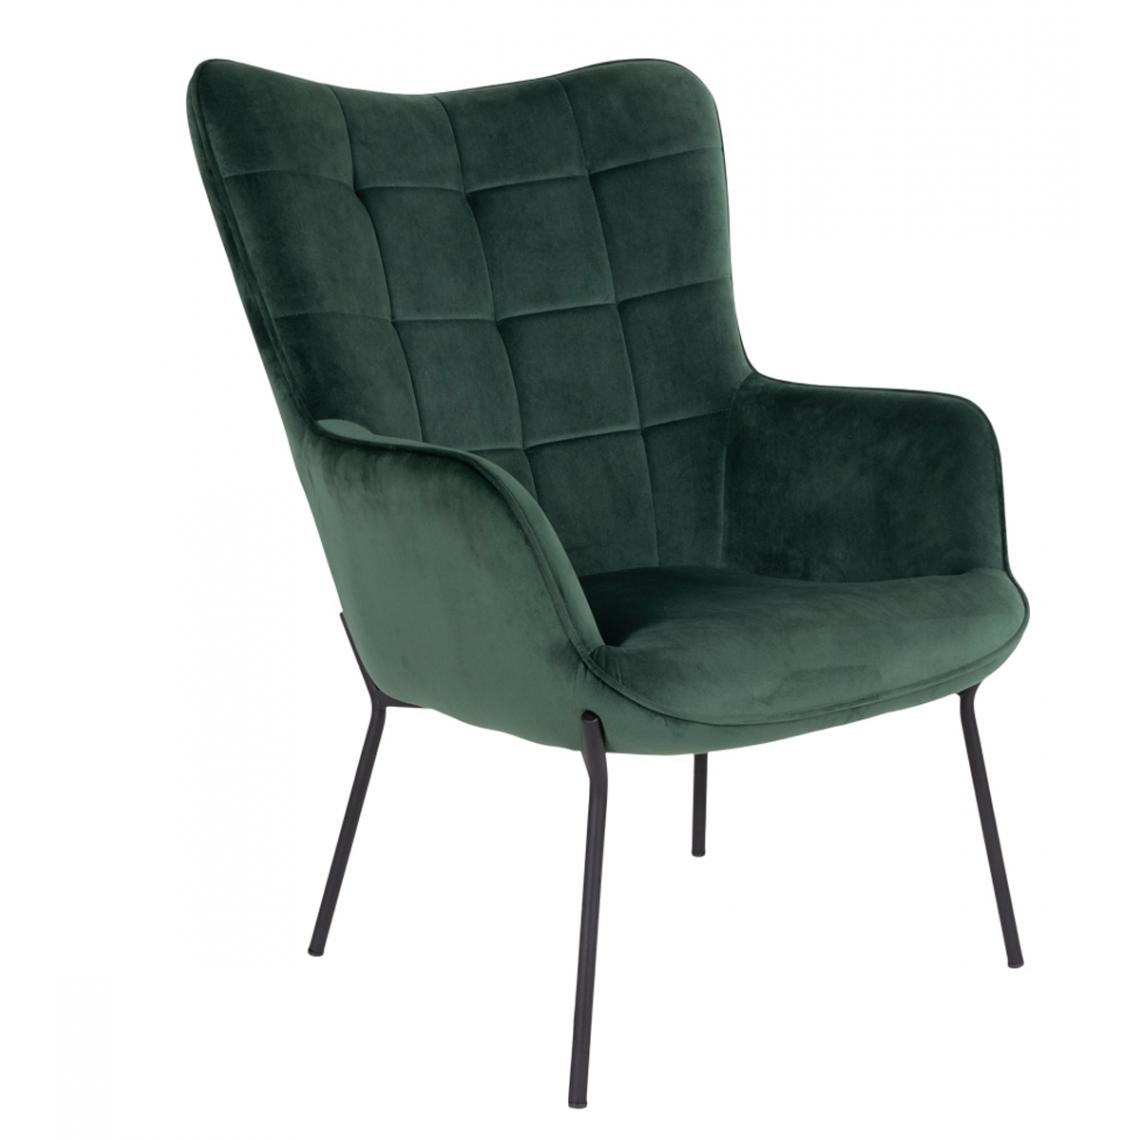 Pegane - Chaise coloris vert en velours - 79 x 70 x 98 cm - Chaises